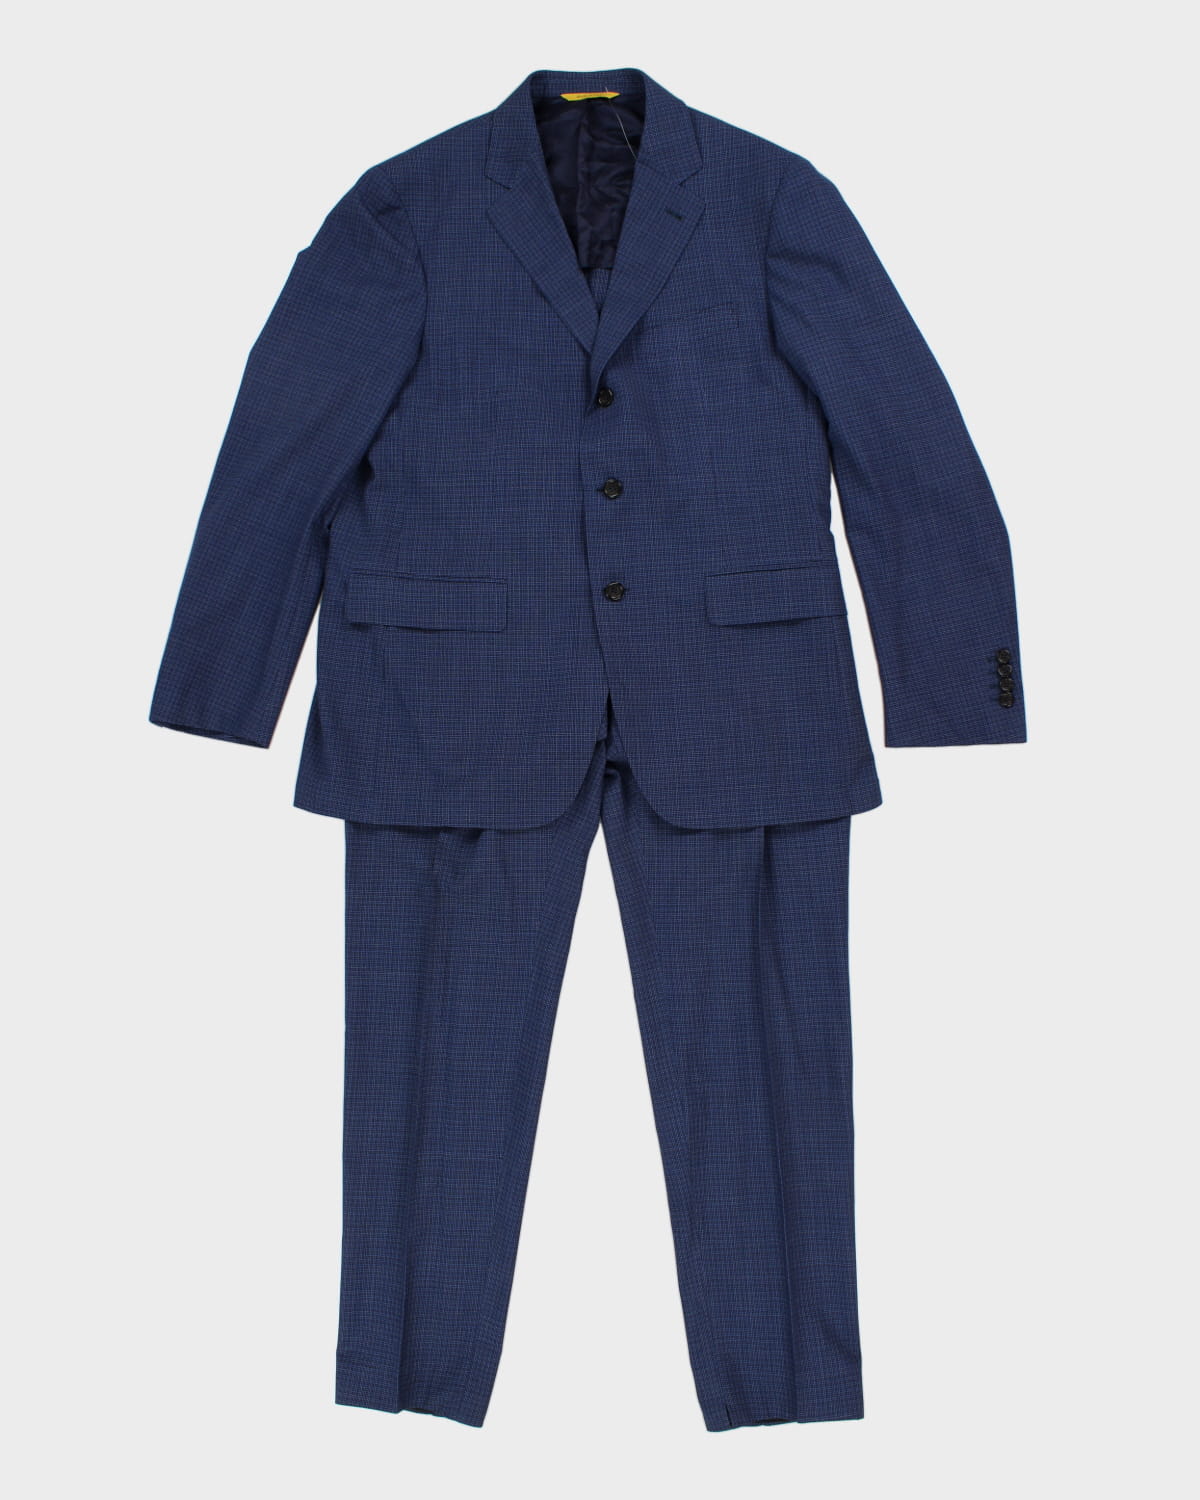 Vintage Canali Suit Jacket Set - M/L